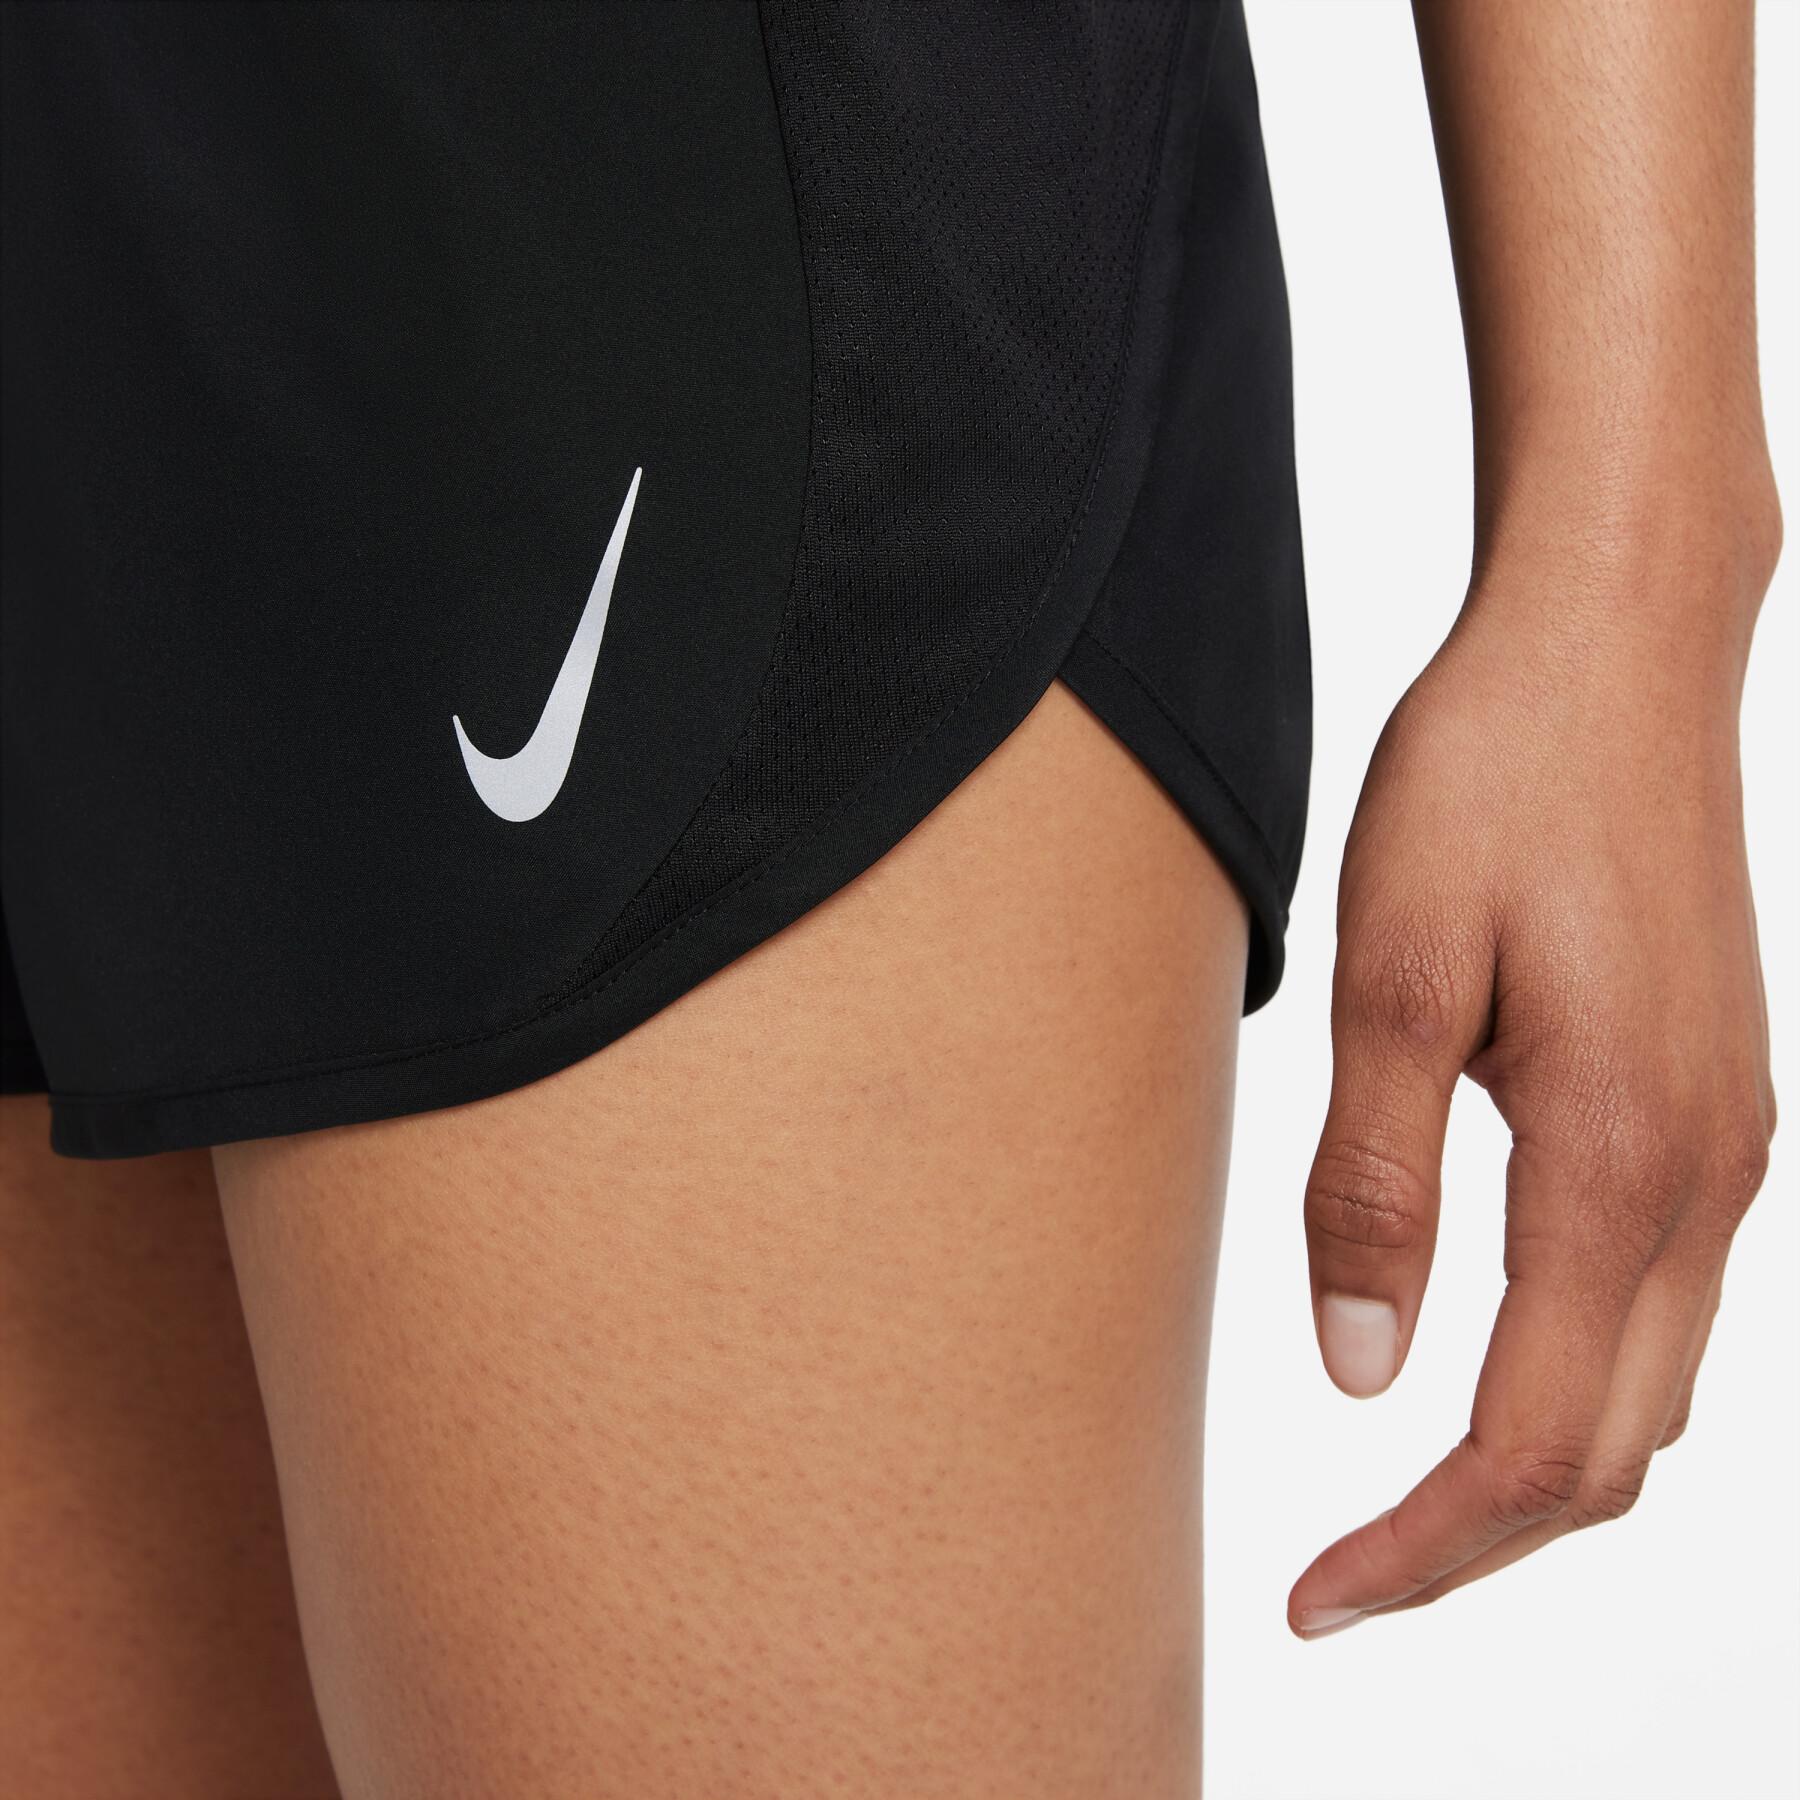 Dames shorts Nike Dri-FIT Tempo race